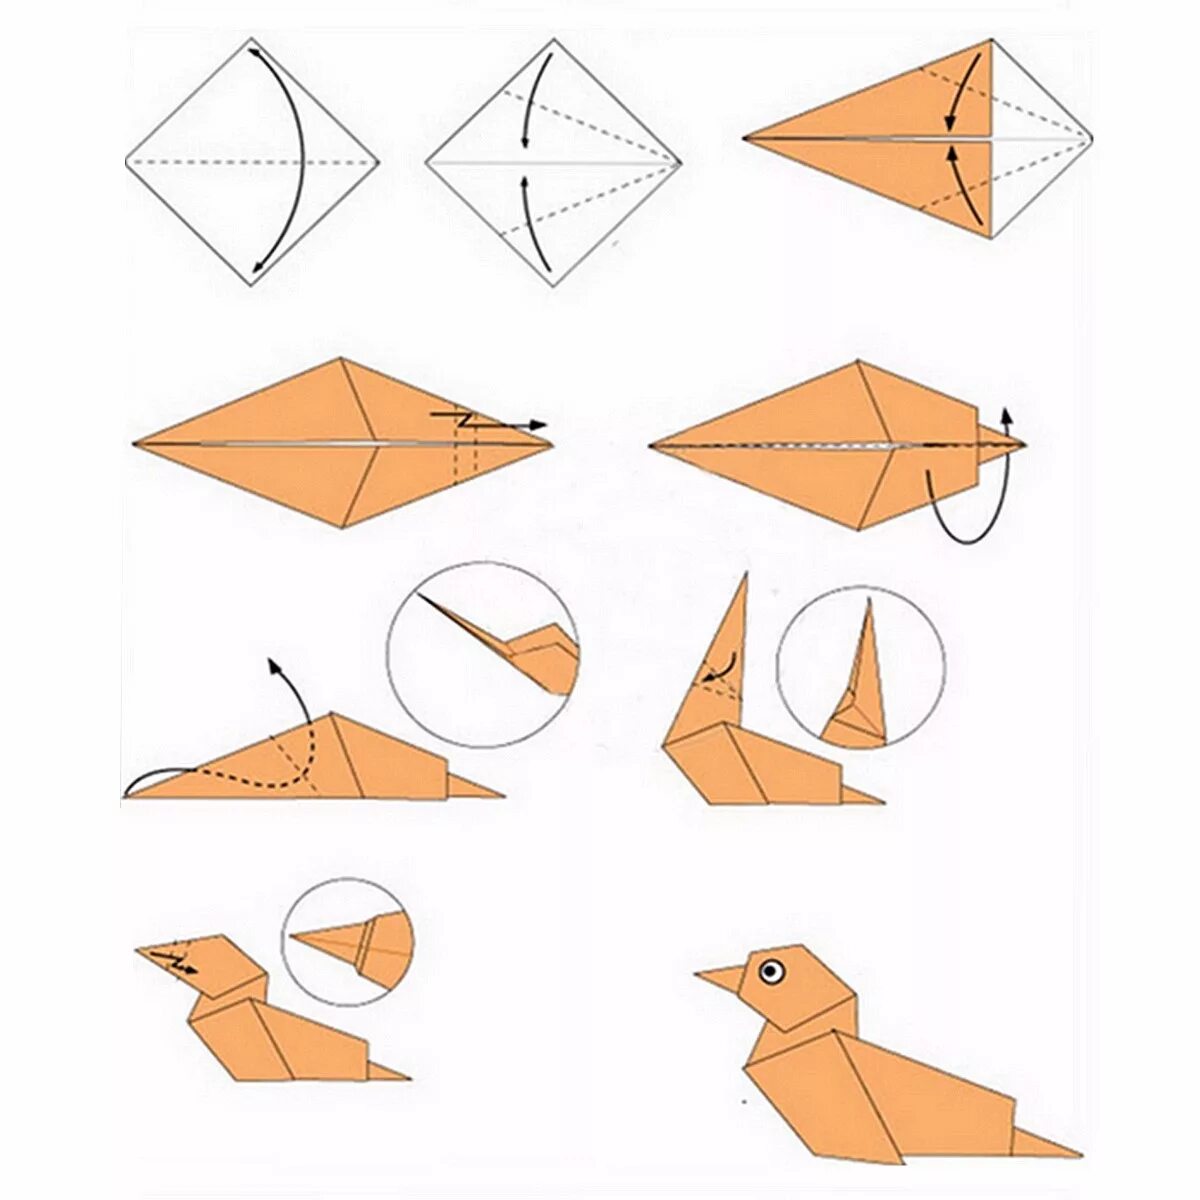 Оригами поэтапно легкие. Схема как делать оригами. Как сложить оригами из бумаги для начинающих. Схемы оригами легкие пошагово. Оригами из бумаги для начинающих животные пошагово схемы.